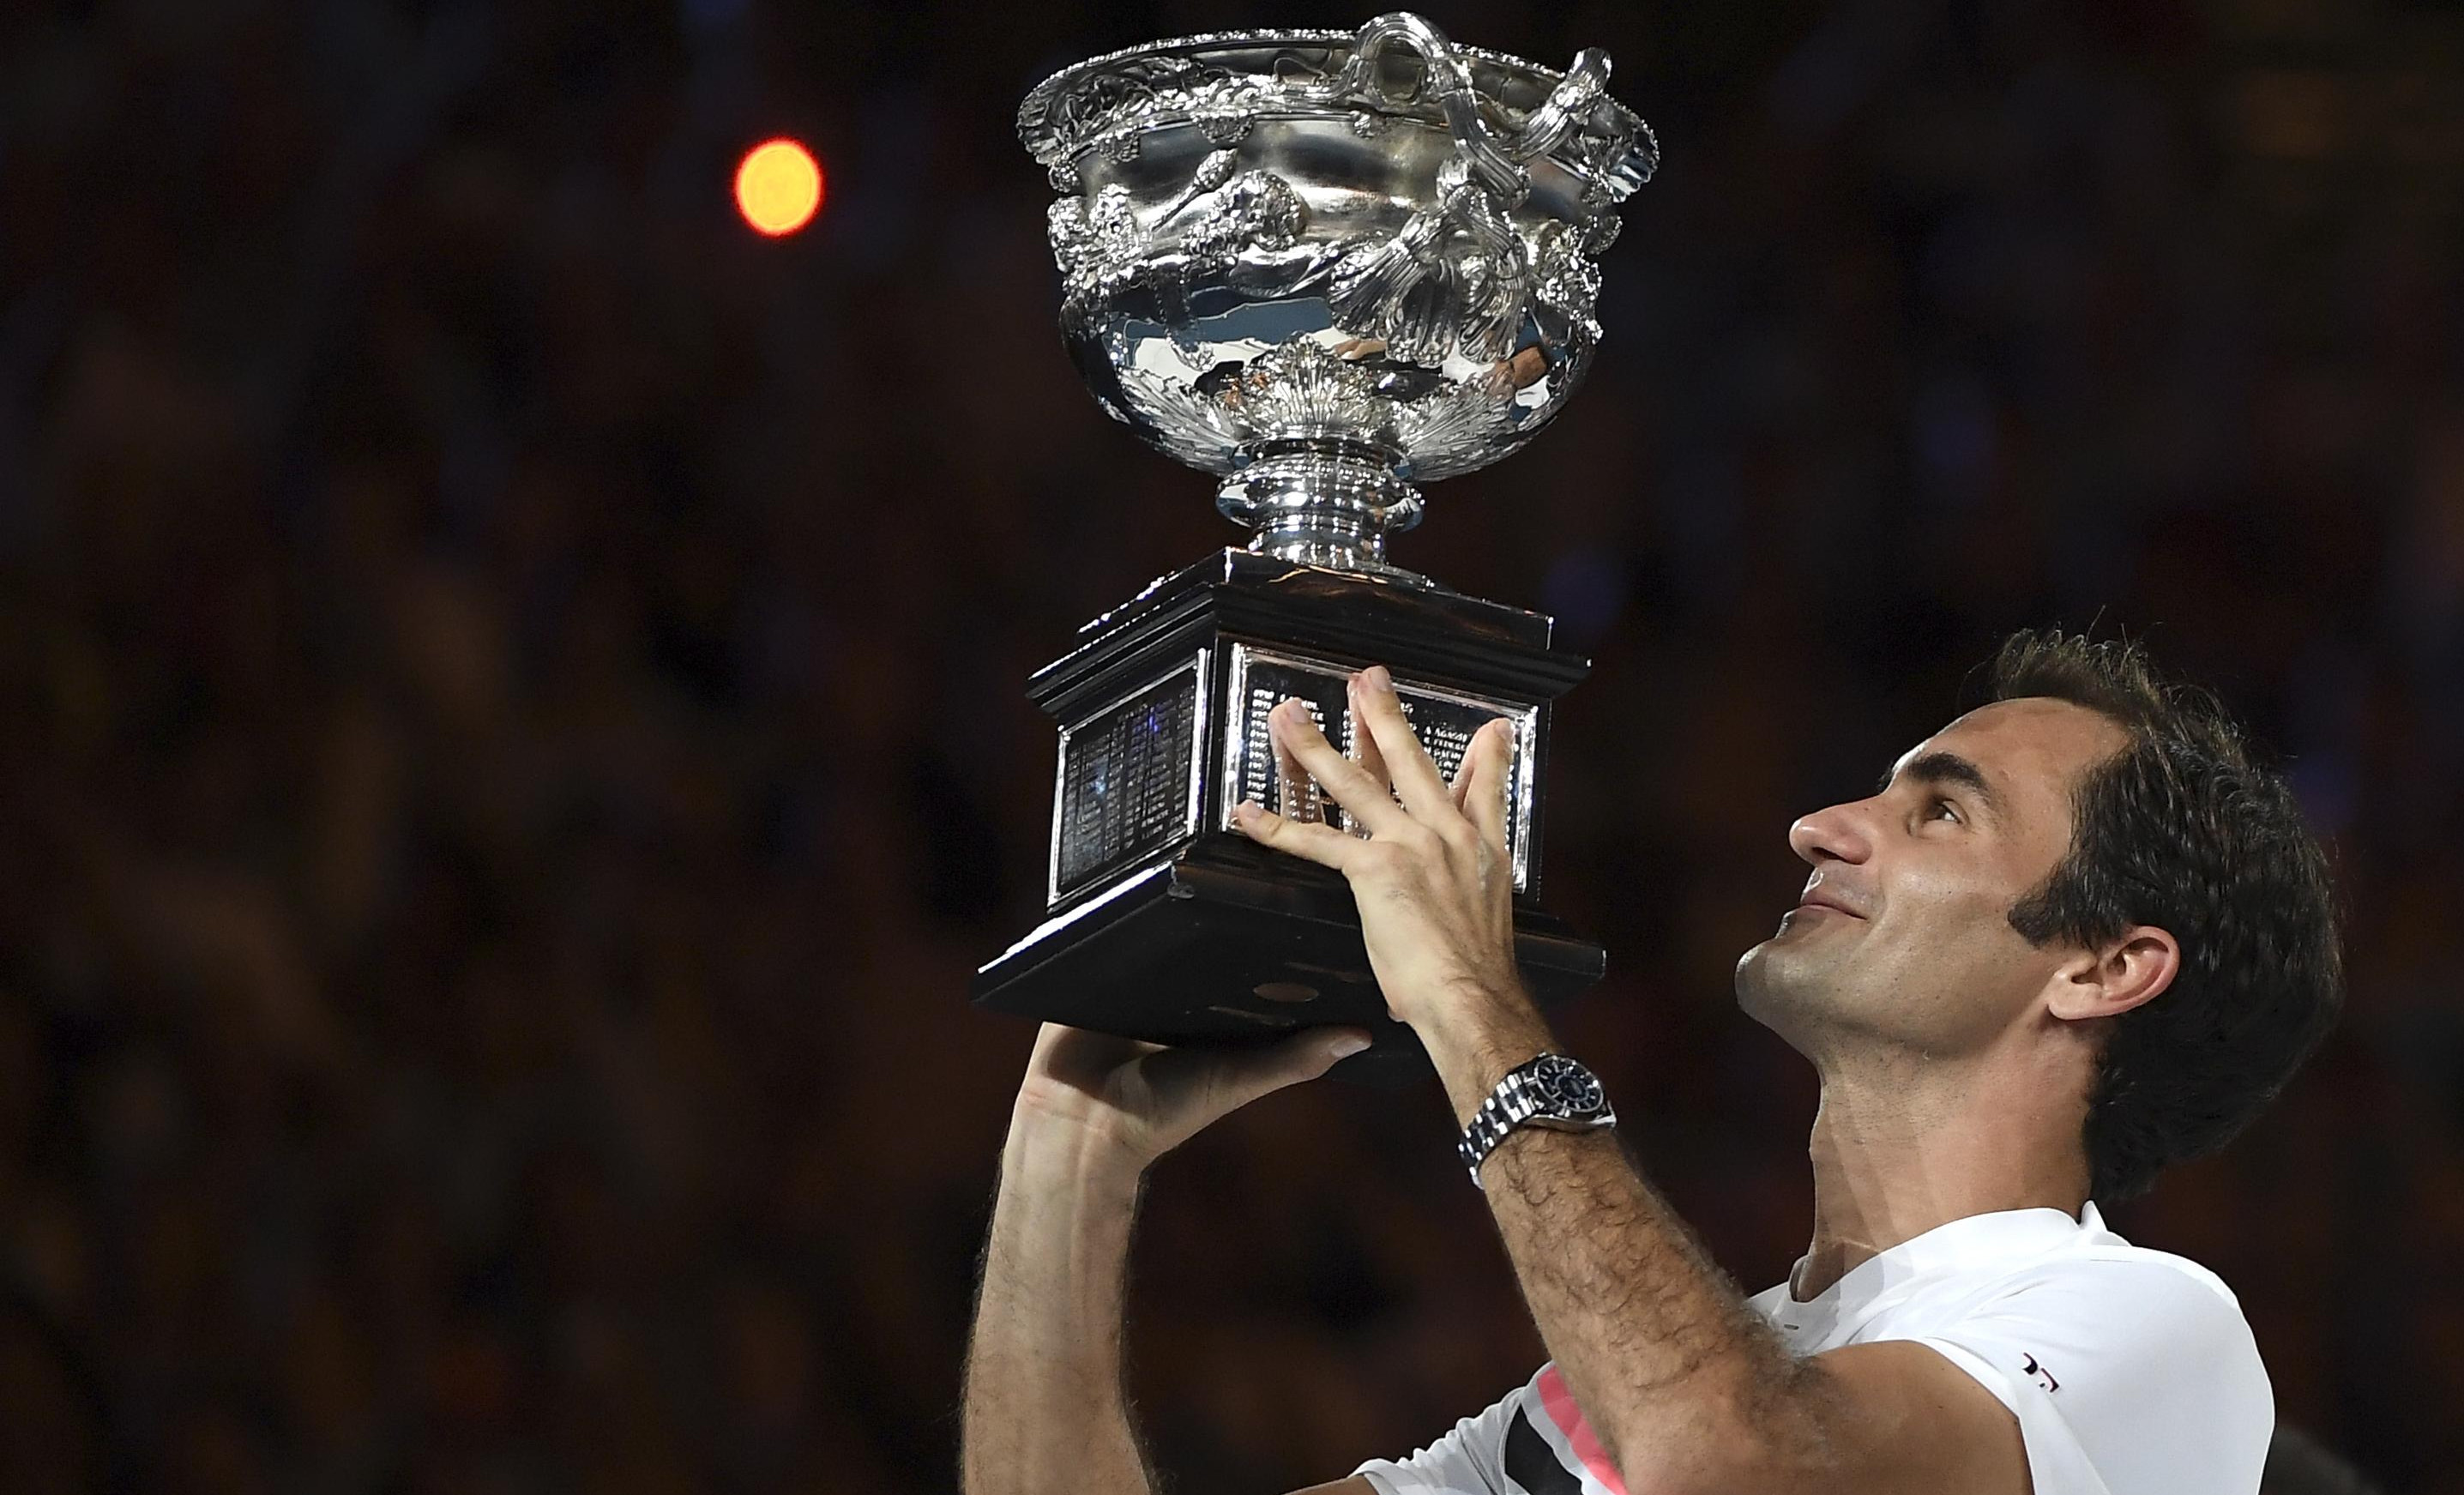 RODŽER NASTAVLJA DA PIŠE ISTORIJU! Federer osvojio 20. grend slem titulu!